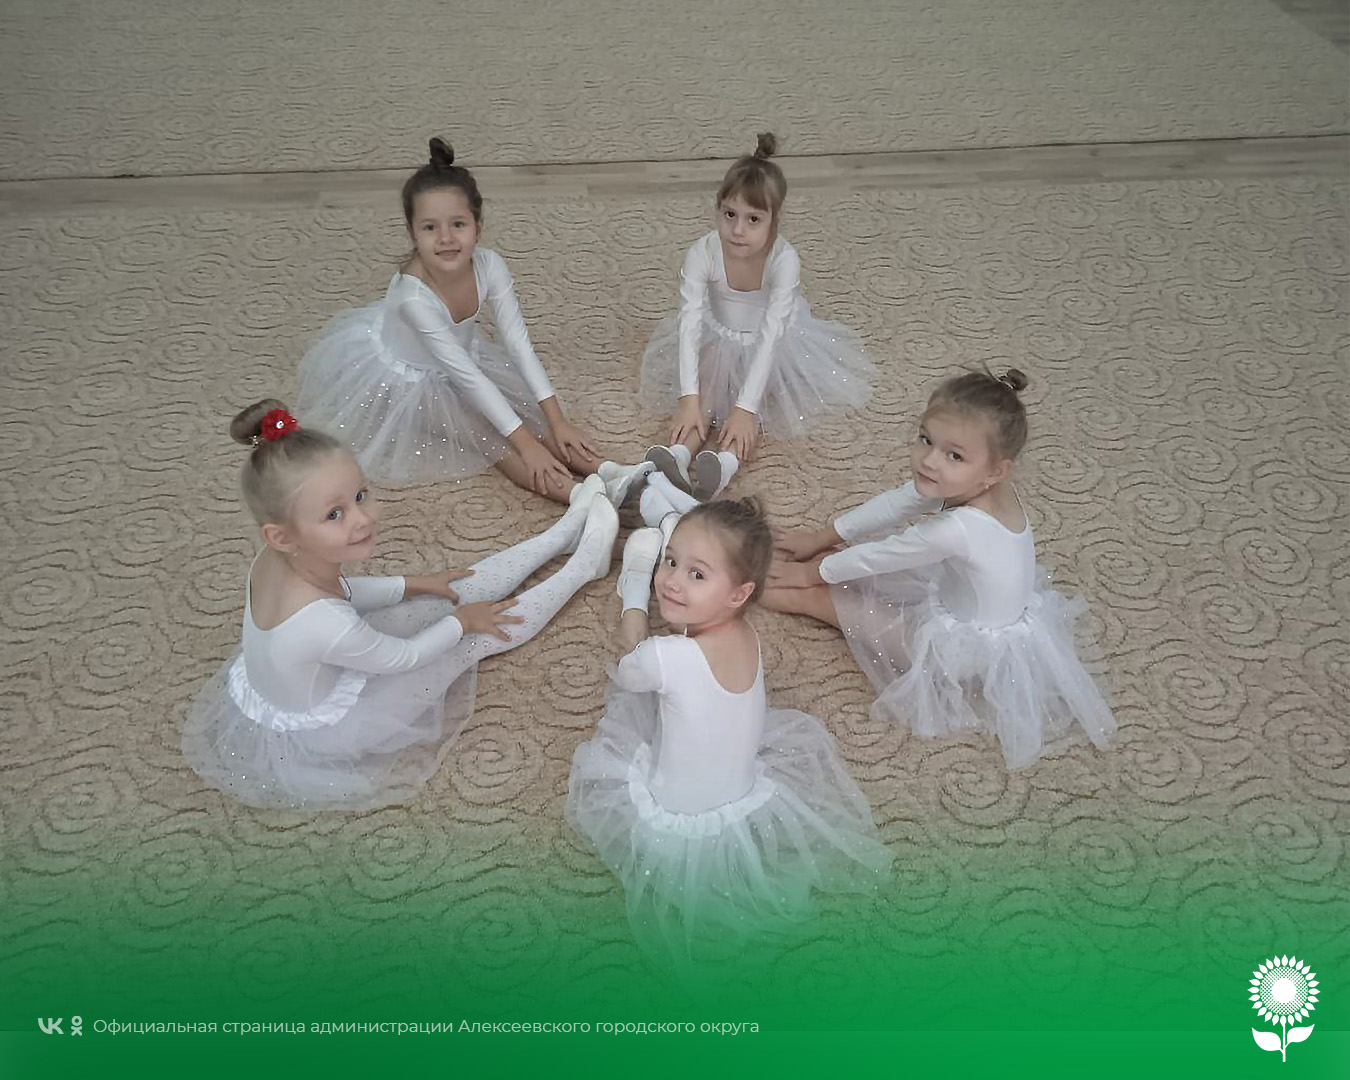 В детских садах Алексеевского городского округа прошёл День балета.